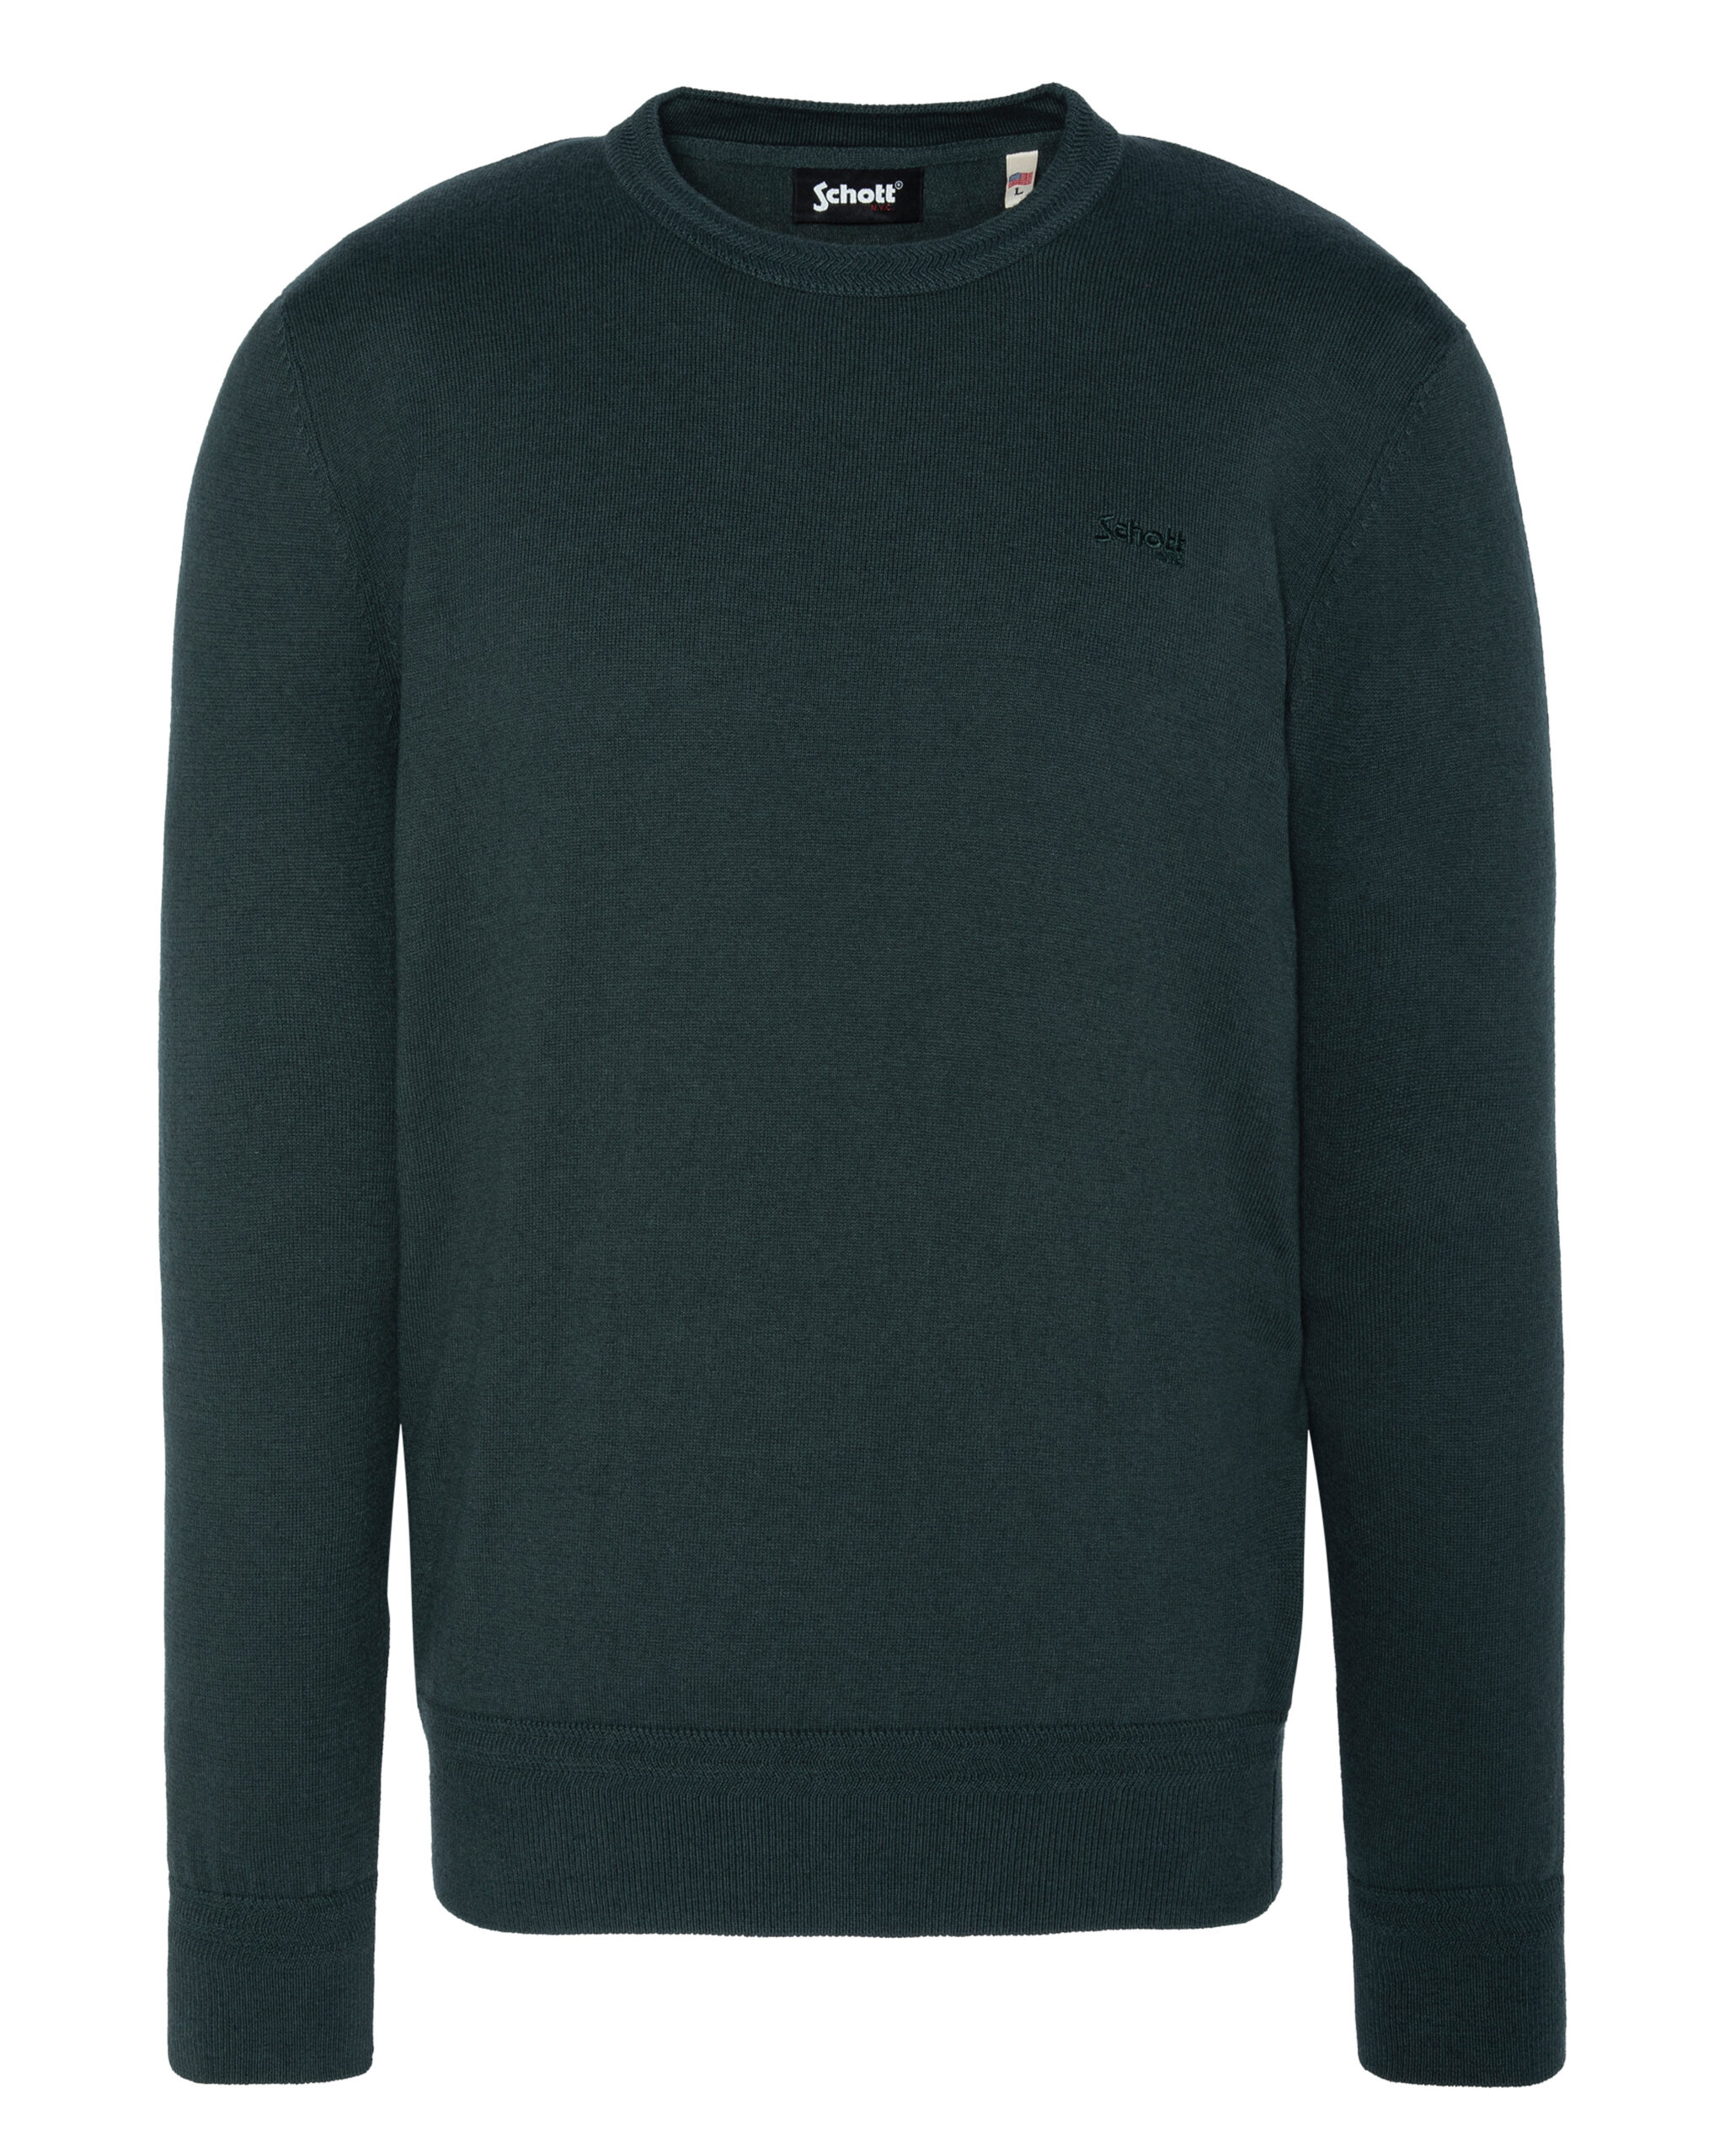 Round Neck Sweater Schott Green